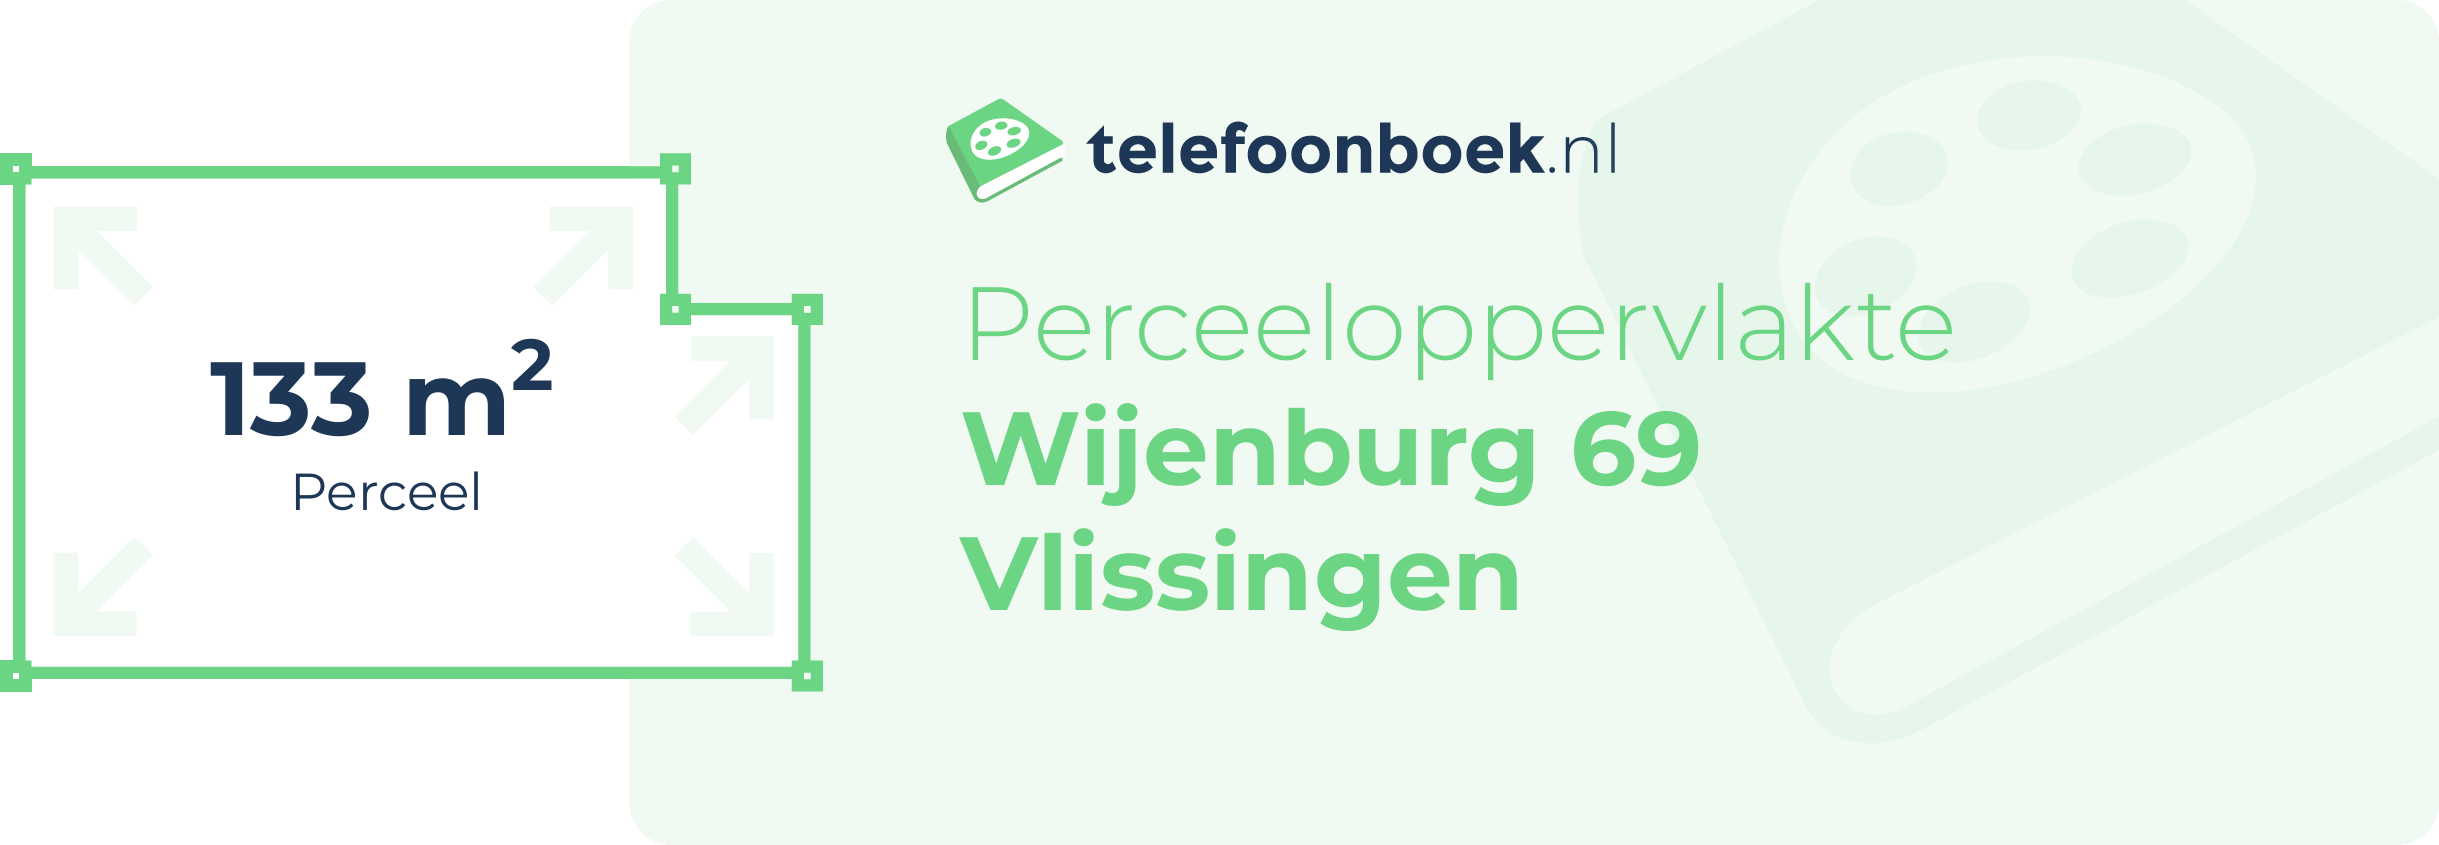 Perceeloppervlakte Wijenburg 69 Vlissingen